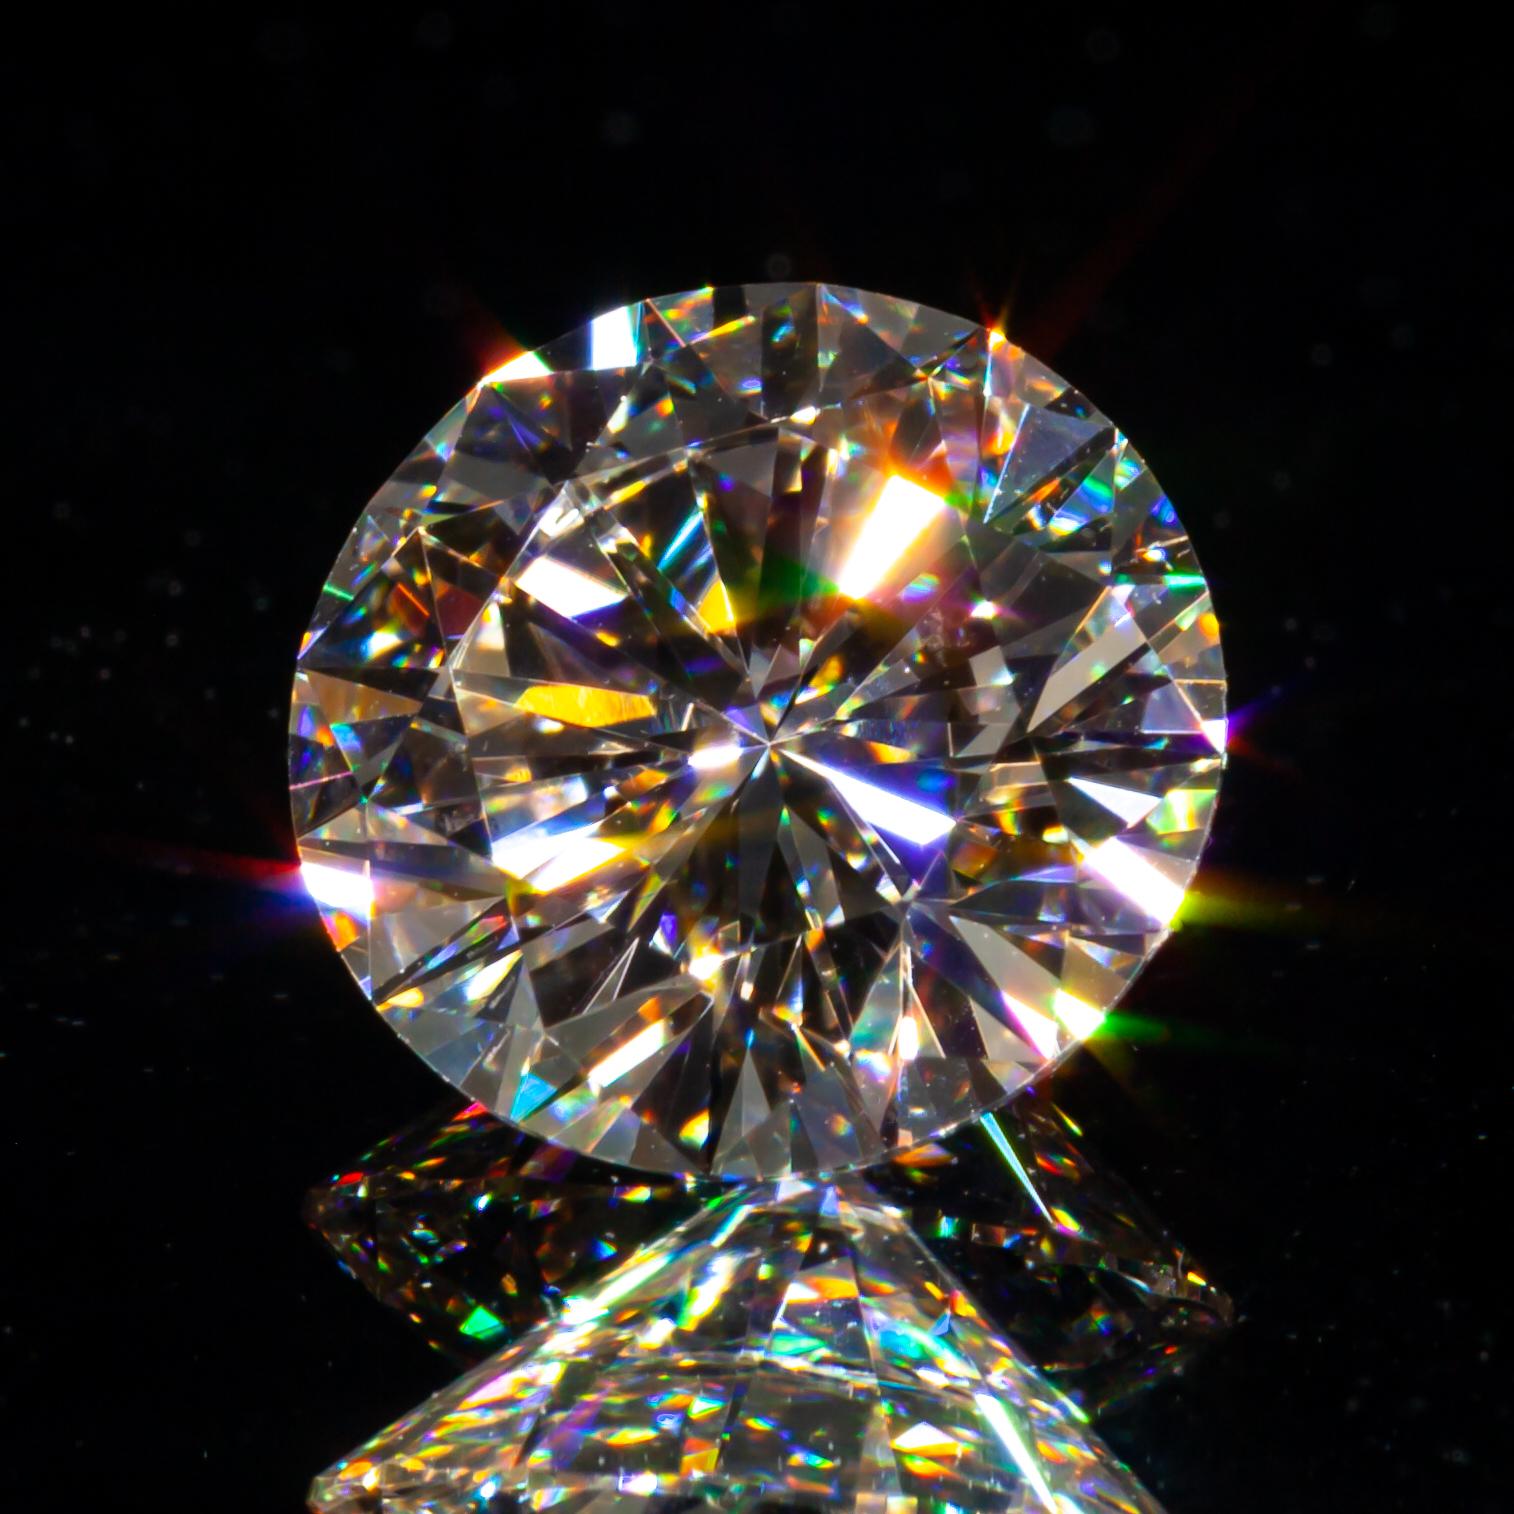 Diamant taille ronde brillant de 1,54 carat non serti L/VS2 certifié GIA

Informations générales sur le diamant
Taille du diamant : Brilliante ronde
Dimensions : 7.51  x  7.47  -  4.53 mm

Résultats de la classification des diamants
Poids en carats